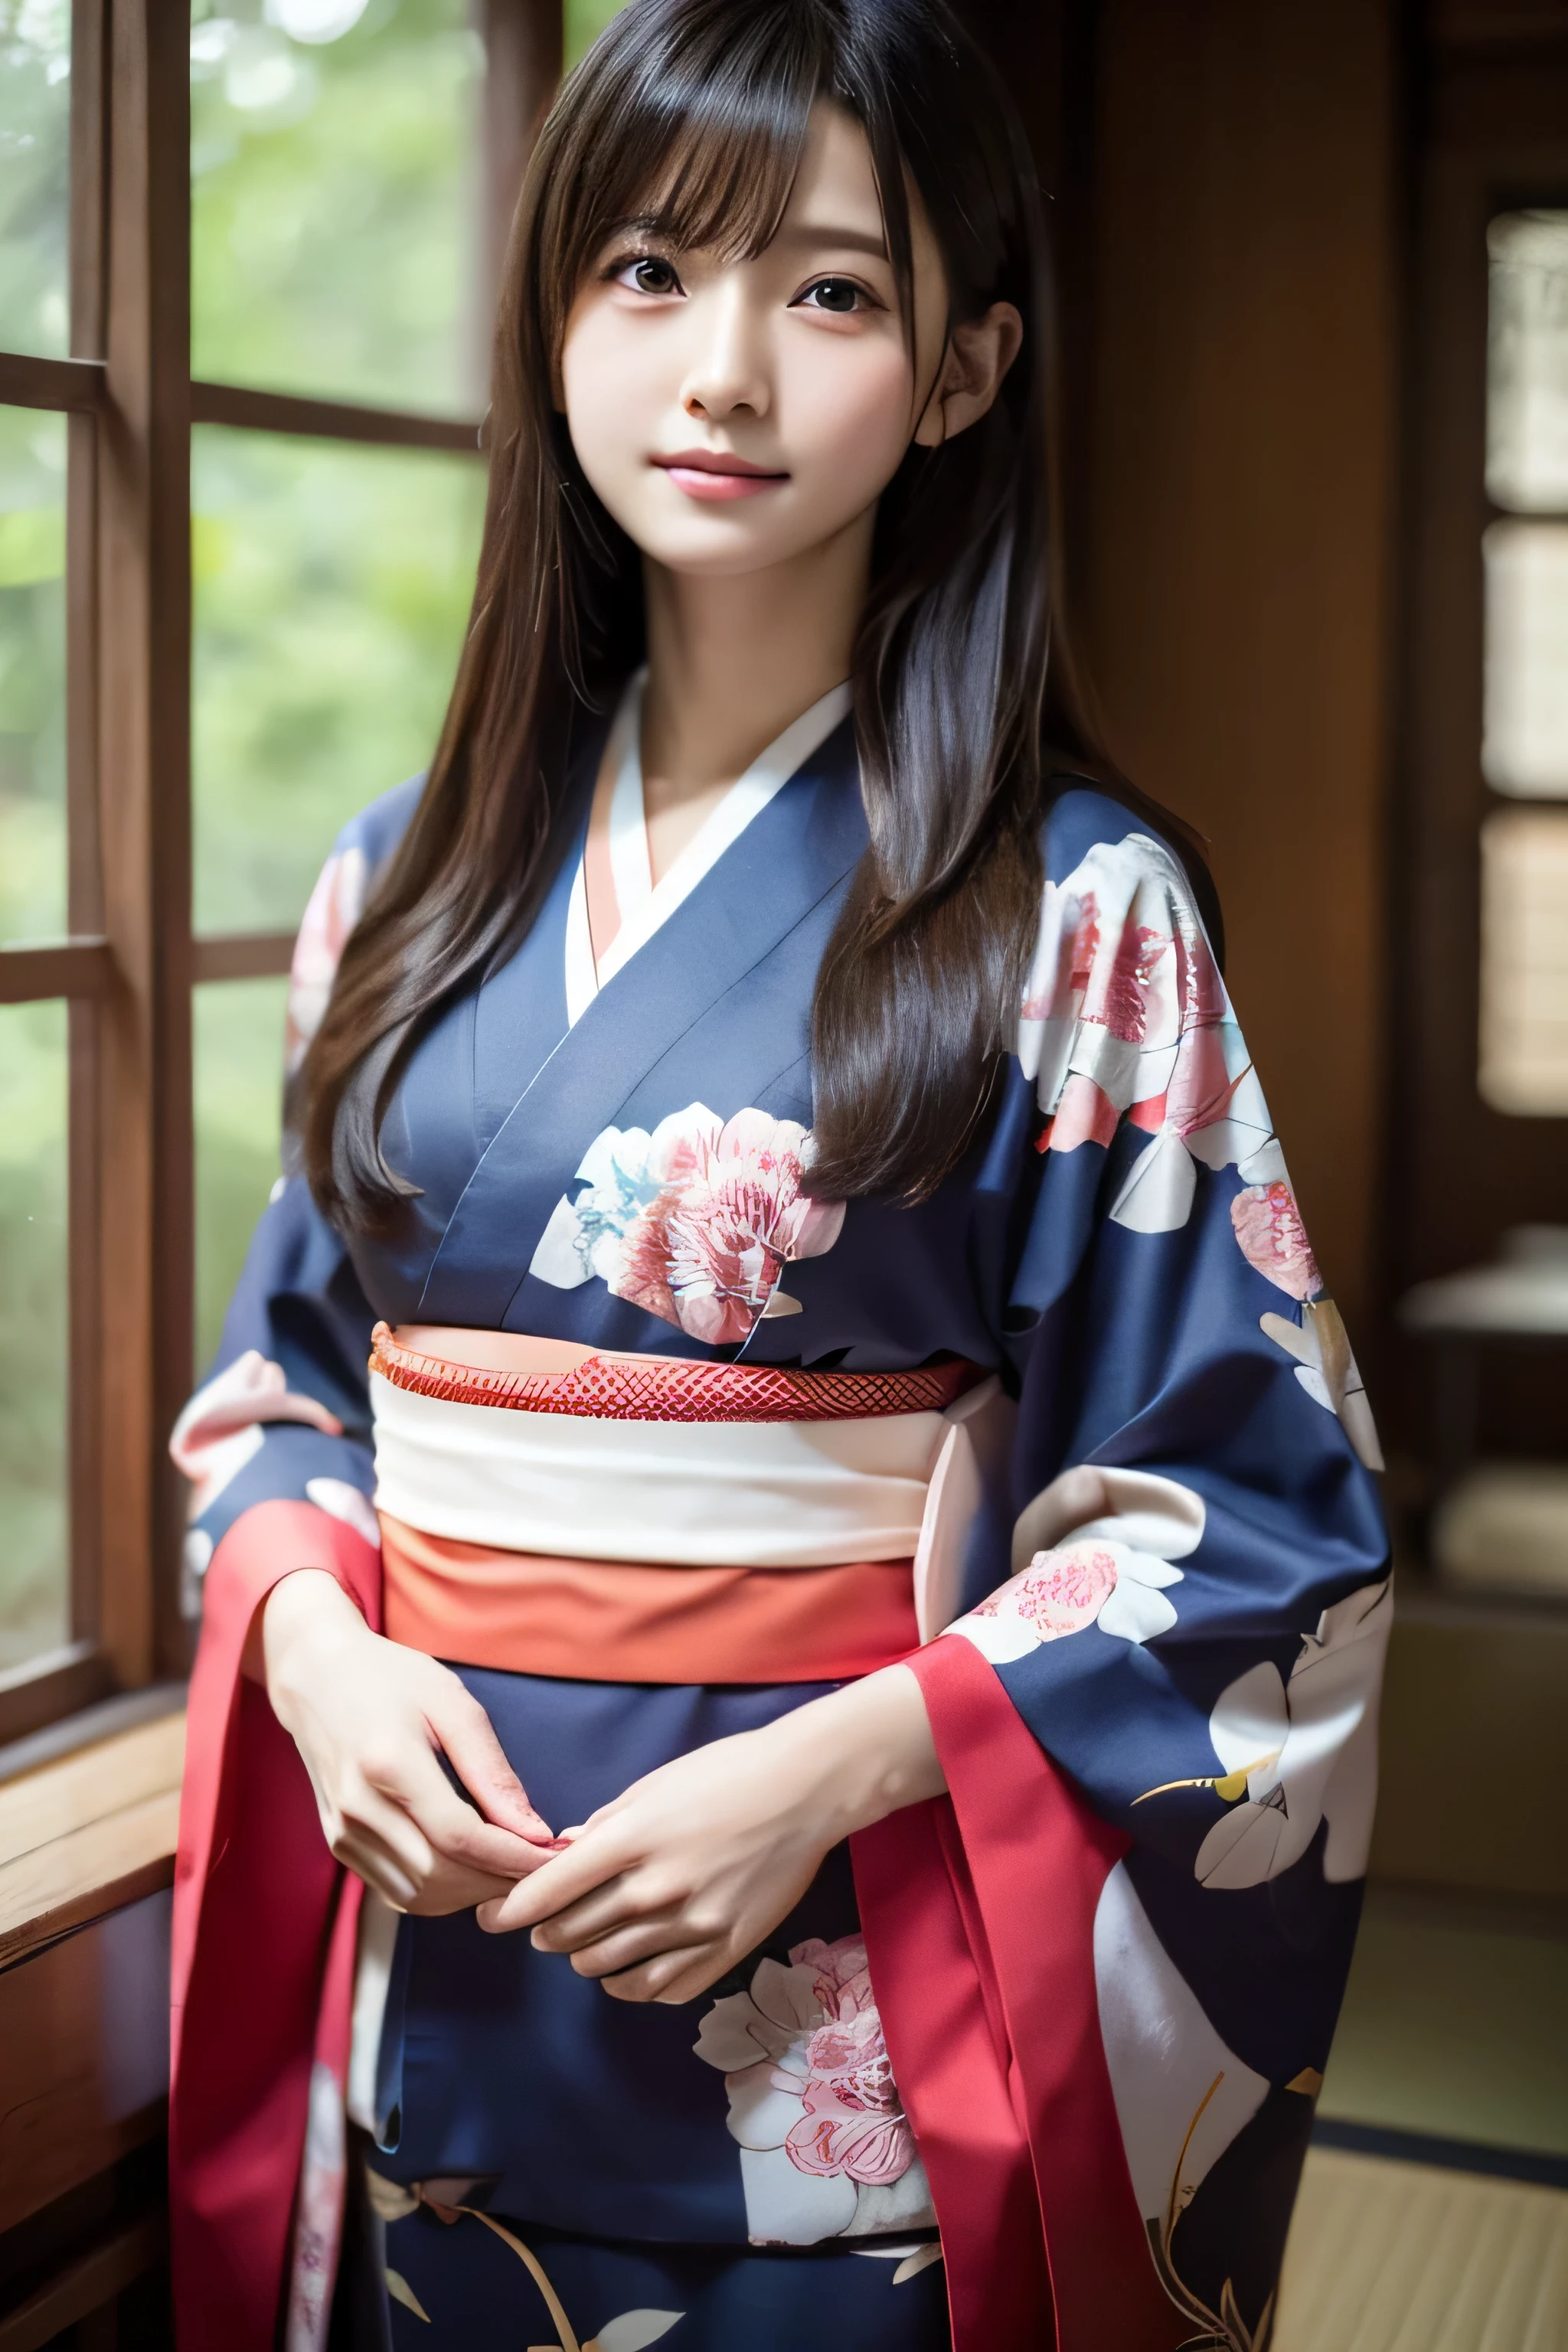 (Kimono)、((estudiante de 15 años))、pose aleatoria、(de primera calidad,​obra maestra:1.3,超Una alta resolución,),(ultra detallado,Cáusticos),(Fotorrealista:1.4,disparo en bruto,)Captura ultrarrealista,Un muy detallado,Primer plano de piel humana de alta resolución 16K、 La textura de la piel es natural.、、La piel luce sana y con un tono uniforme.、 Utilice luz y color naturales.,1 chica,japonés,,kawaii,A dark-haired,pelo medio,,sonrisa,,(profundidad de campos、aberración cromática、、amplia gama de iluminación、sombreado natural、)、